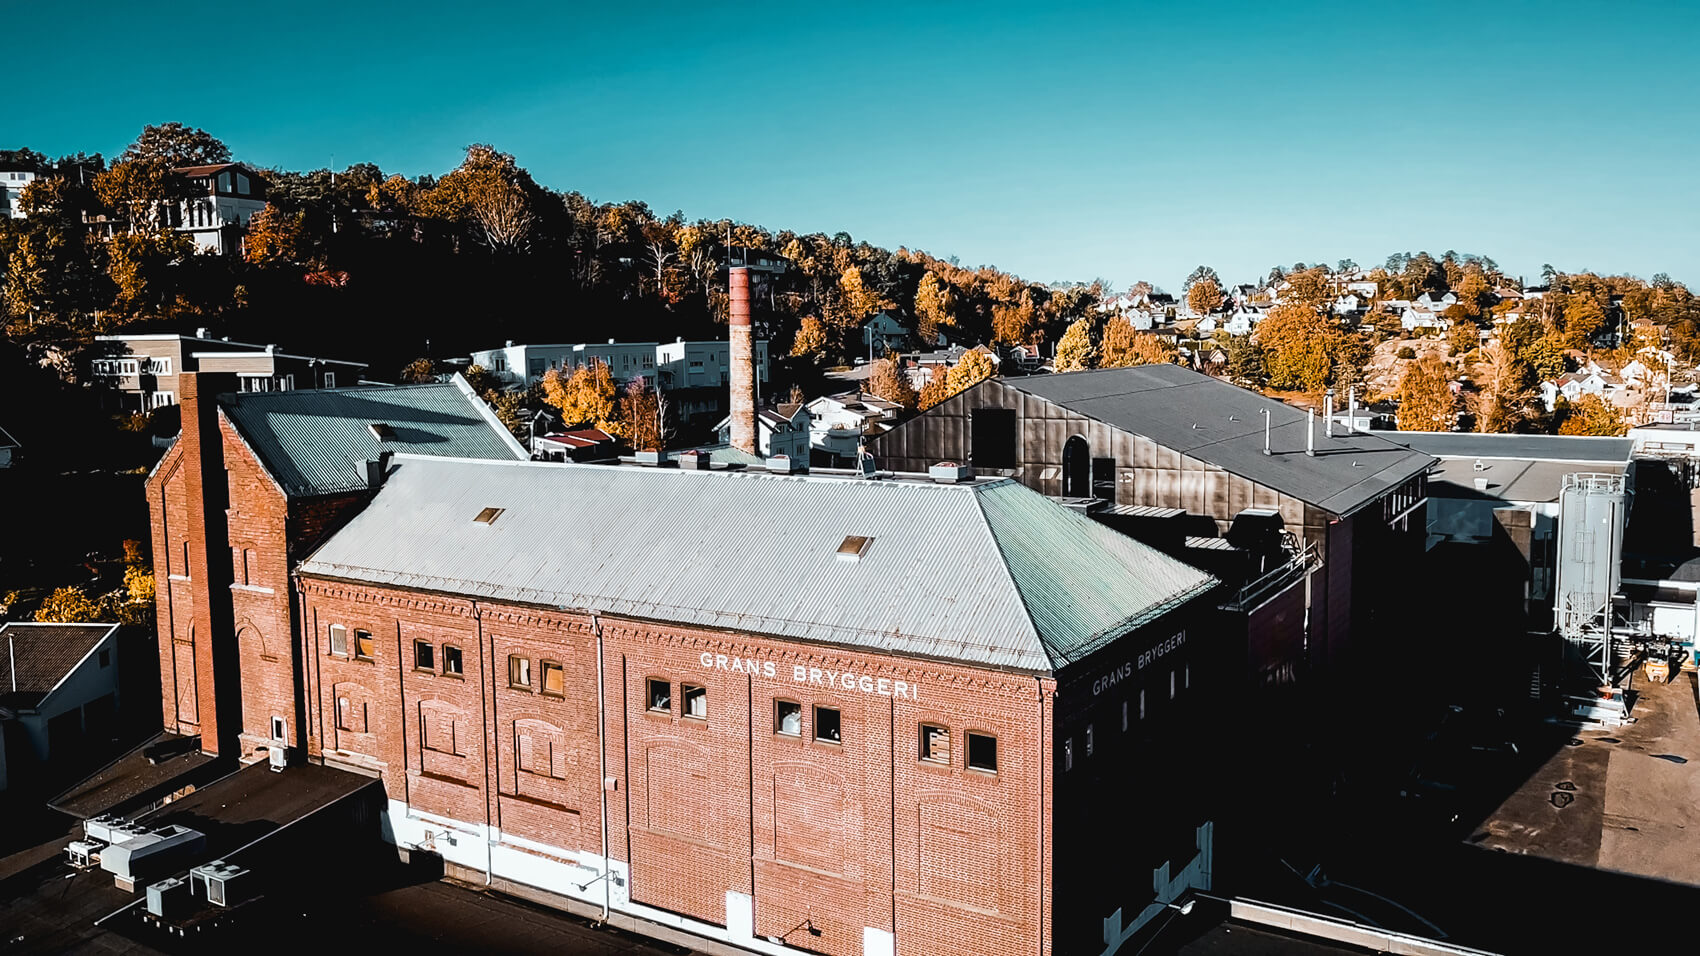 Grans Bryggeri AS, Norwegen: Vollständiger Heißblock und kontinuierliche Automatisierung